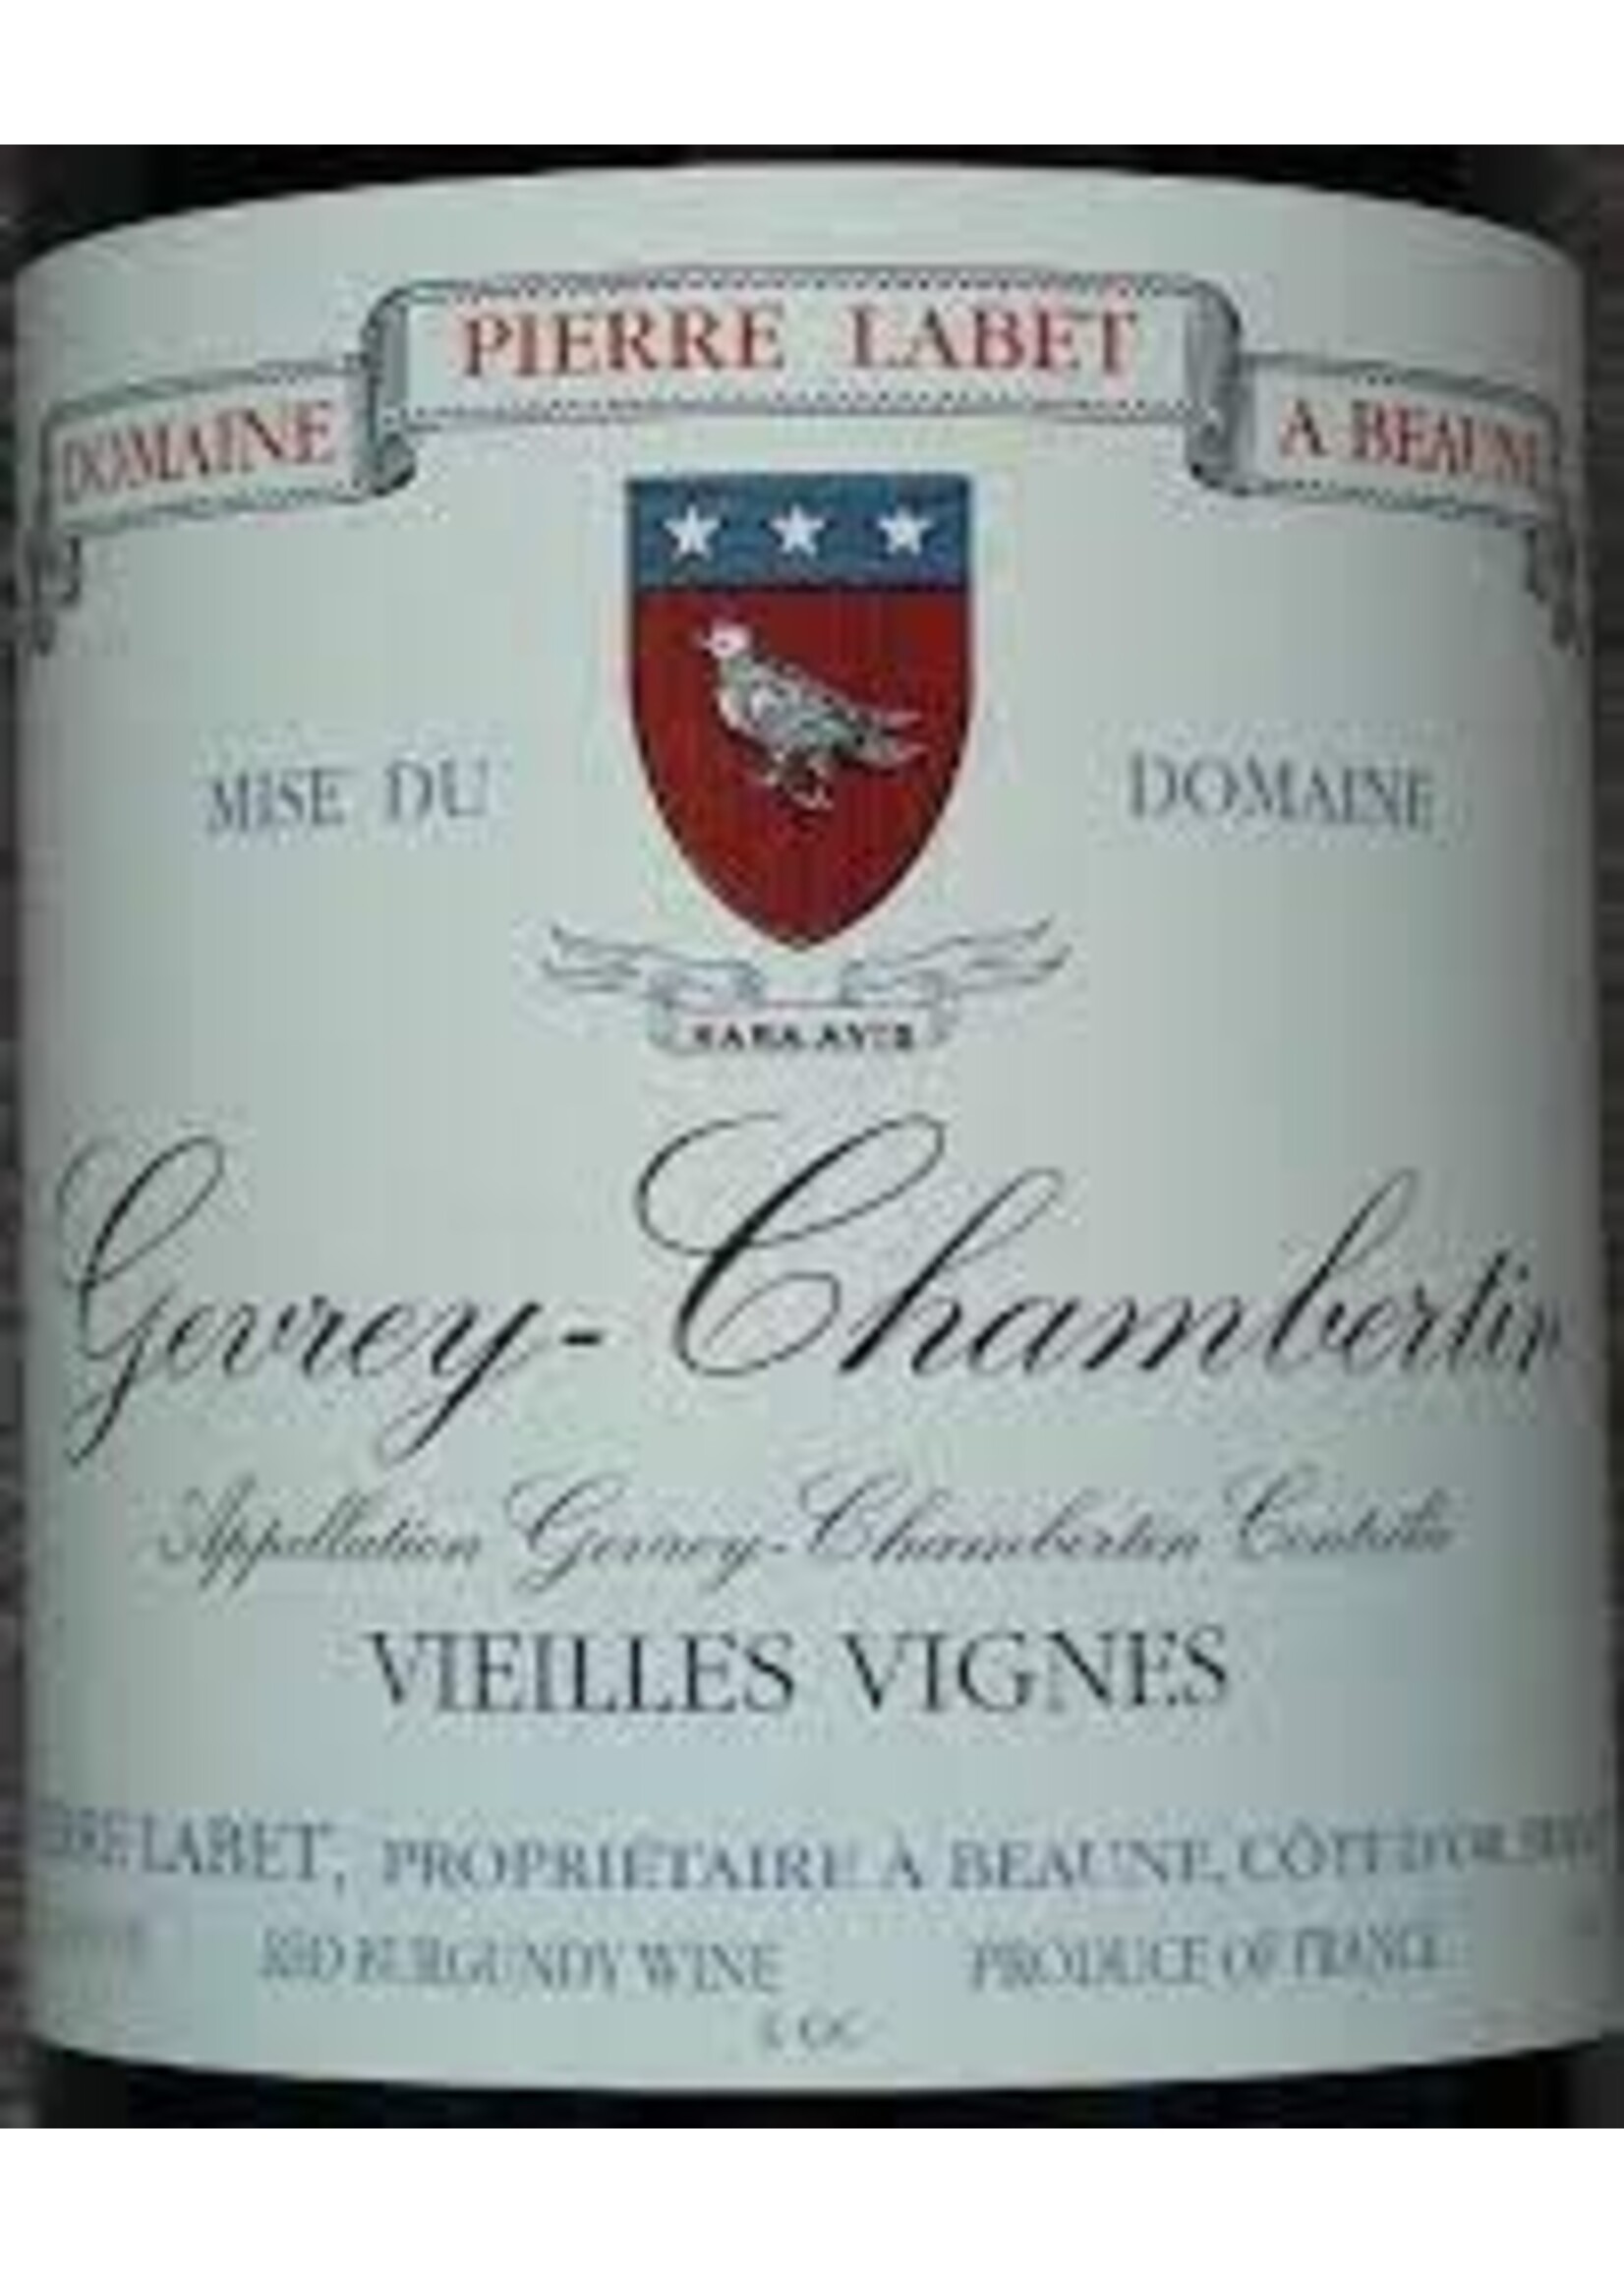 Pierre Labet 2019 Gevrey-Chambertin Vieilles Vignes 750ml